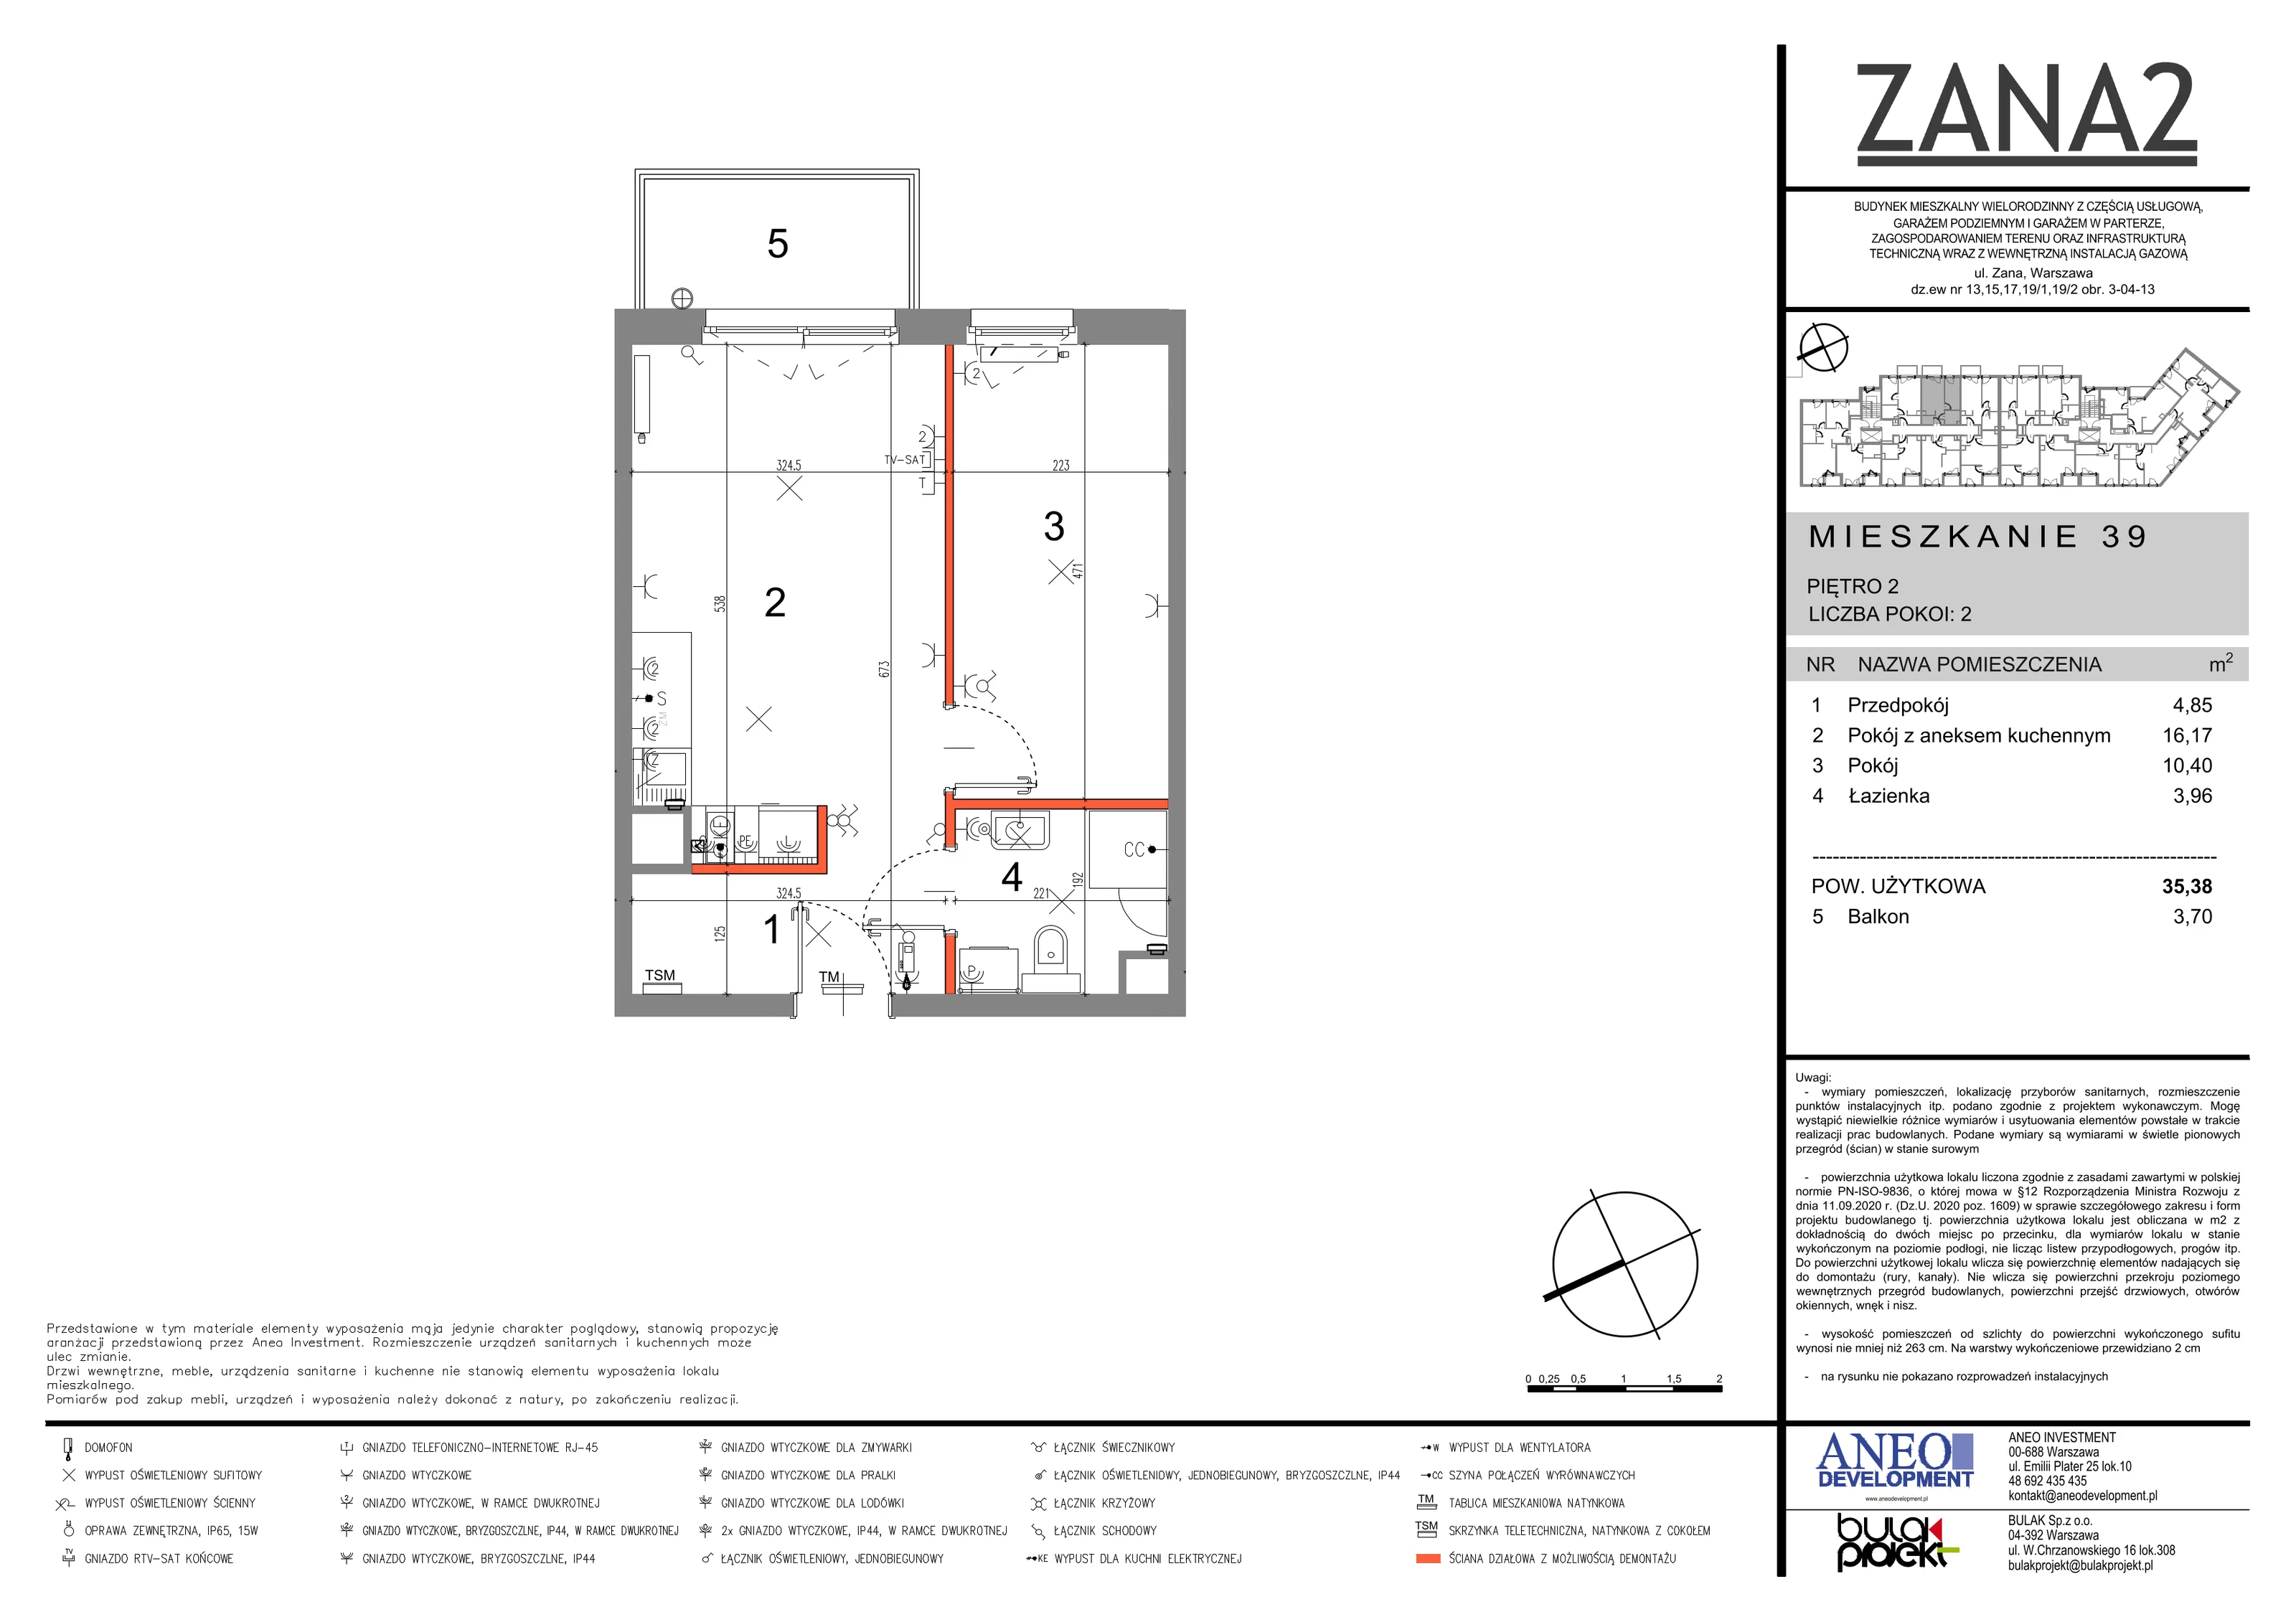 Mieszkanie 35,38 m², piętro 2, oferta nr 39, Zana 2, Warszawa, Praga Południe, Gocławek, ul. Tomasza Zana